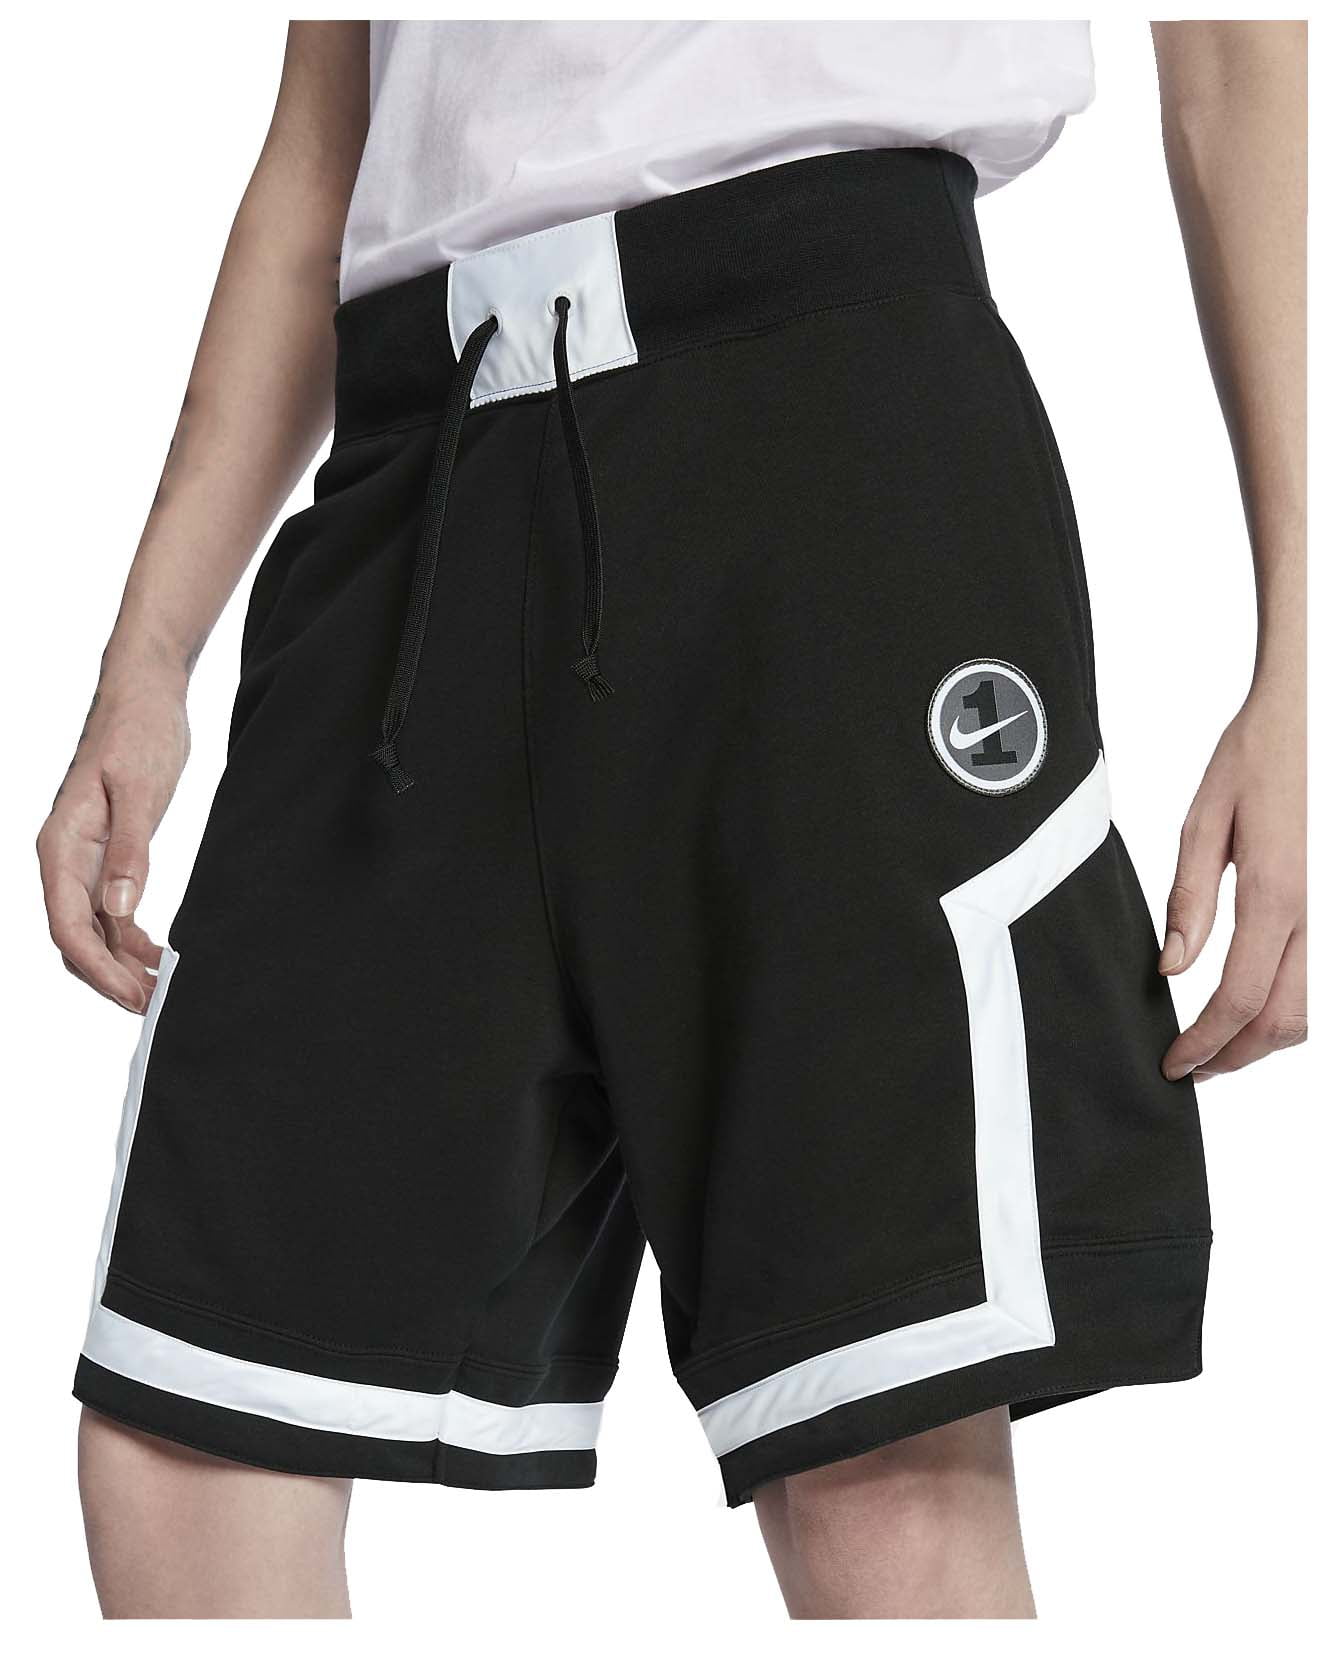 Nike - Nike Men's AF1 Loose Fit Sport Casual Shorts - Walmart.com ...